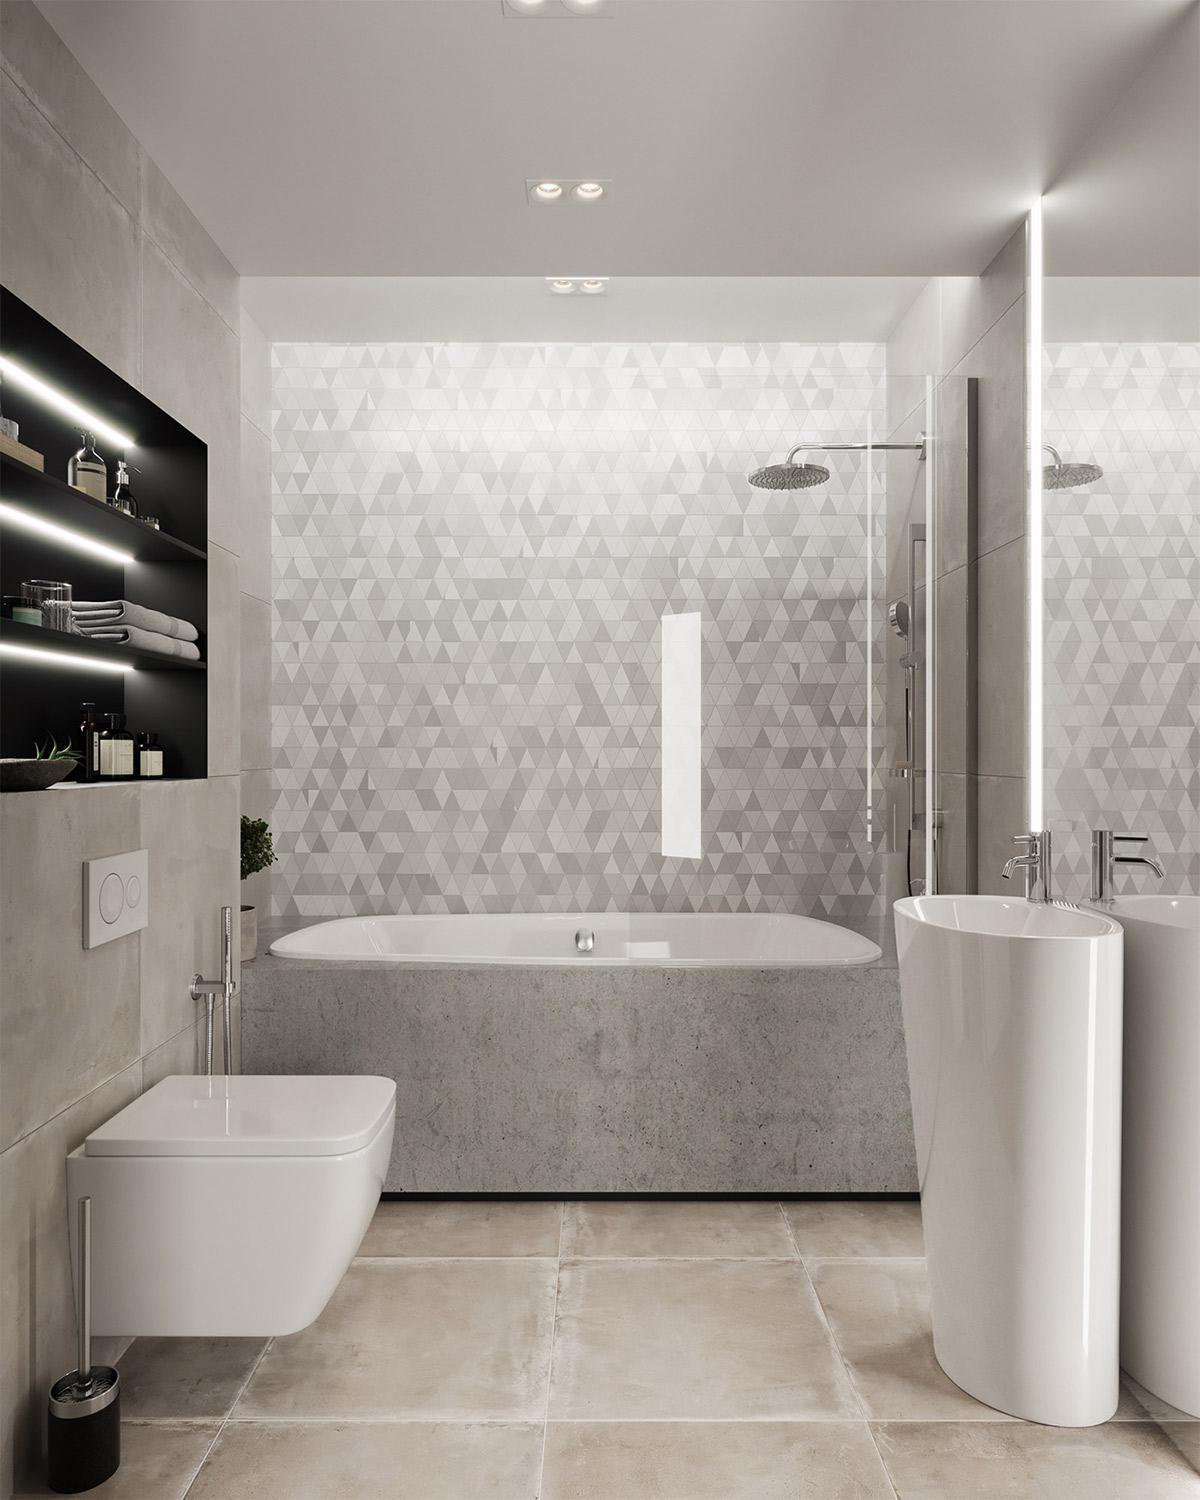 Không gian phòng tắm sang trọng, hiện đại với tone màu trắng tinh khôi. Nội thất đơn giản nhưng đầy đủ công năng cho gia chủ sử dụng.